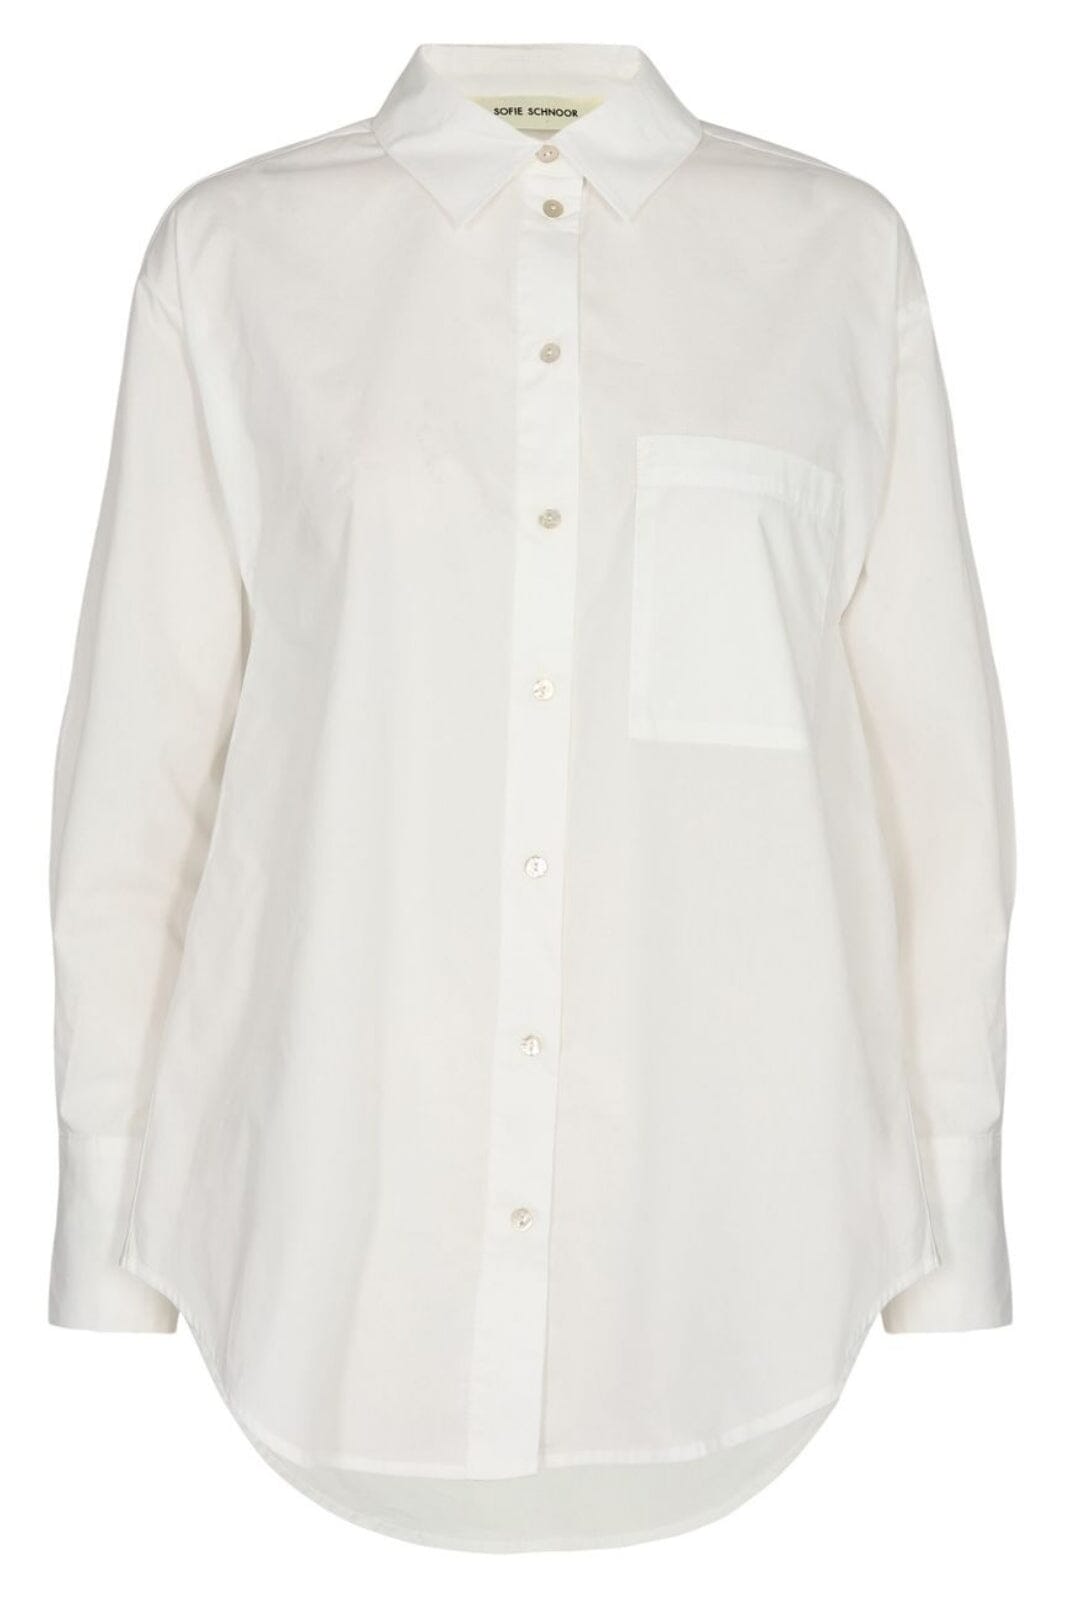 Sofie Schnoor - Snos417 Shirt - Antique White Skjorter 